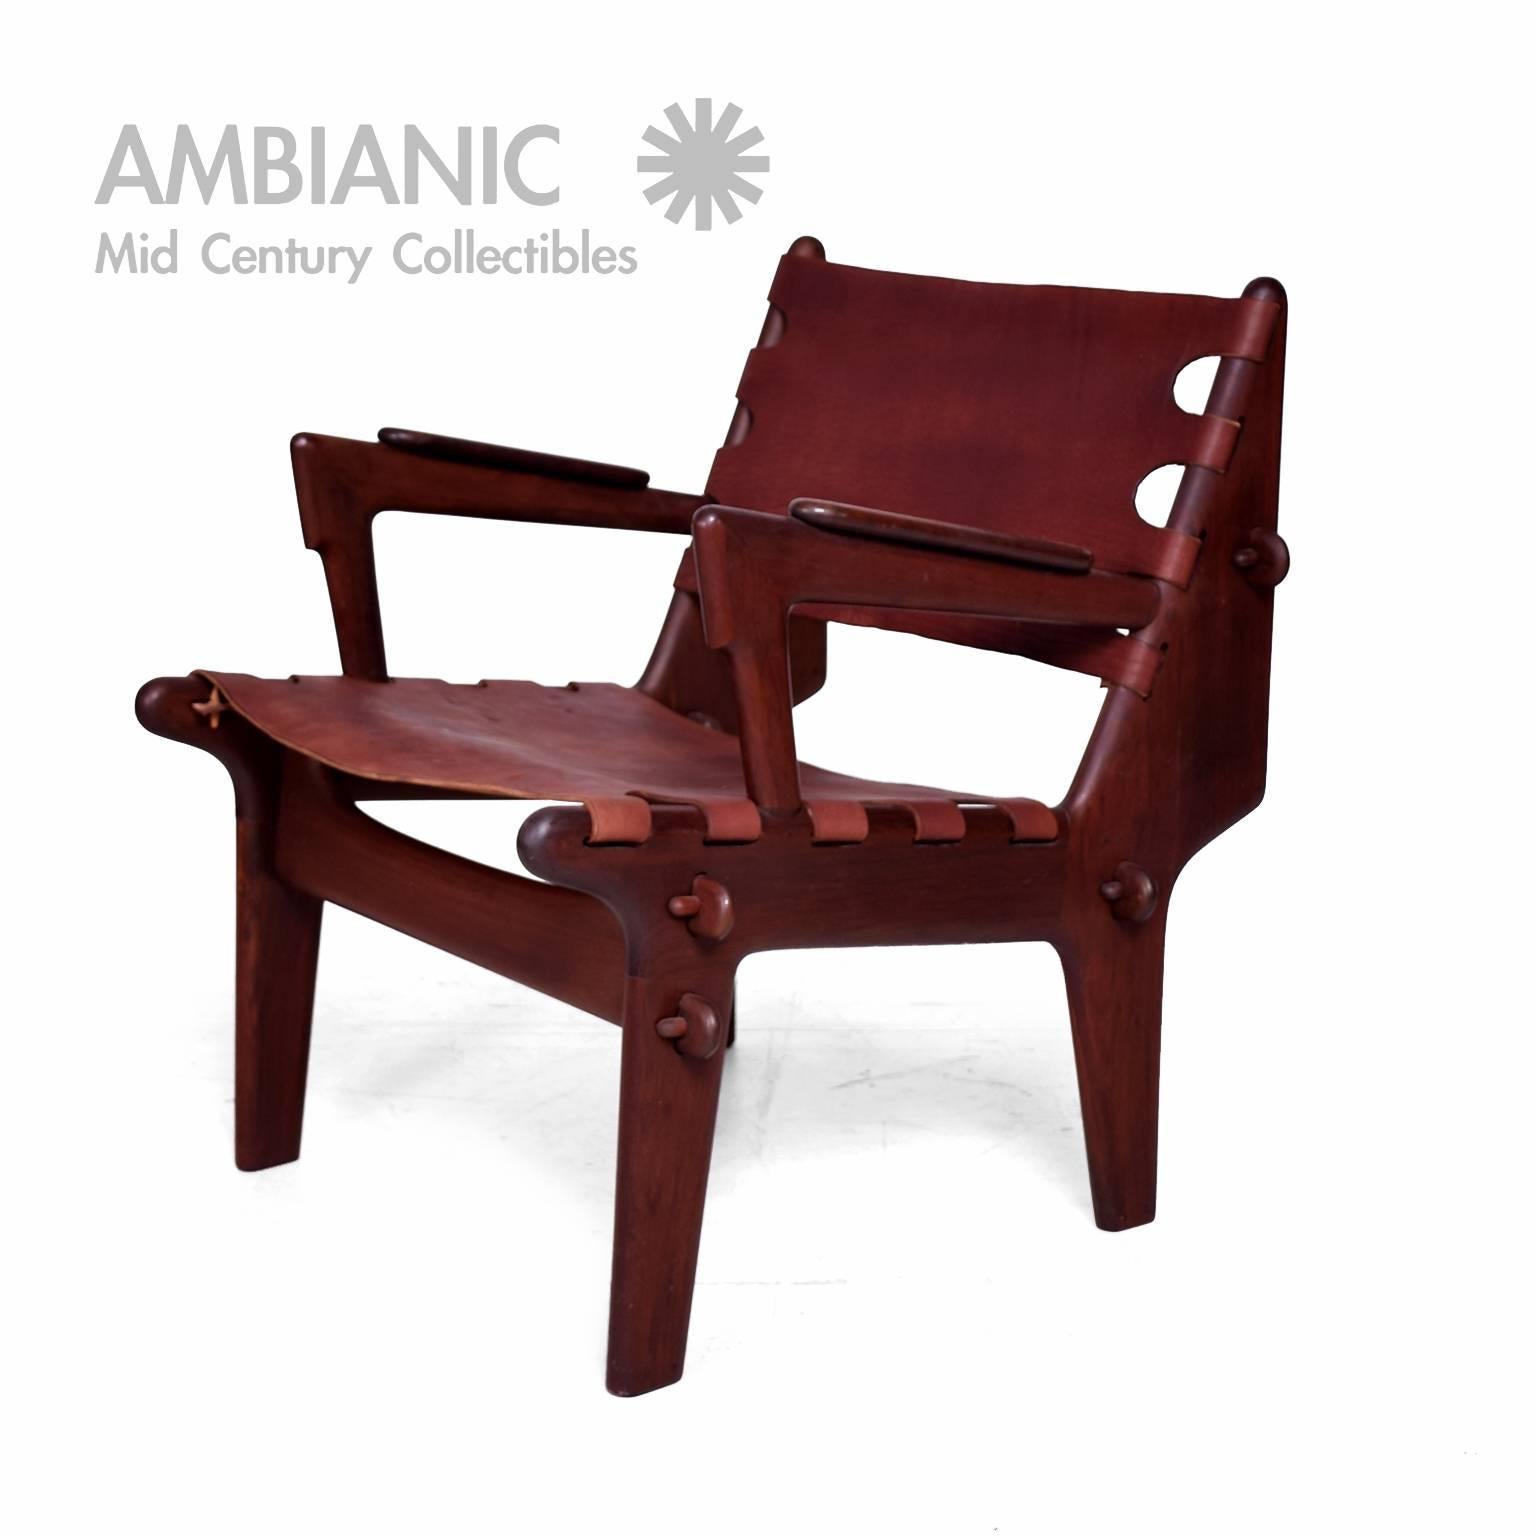 Mid-Century Modern Mid Century Modern Pair of Safari Chairs by Angel Pazmino